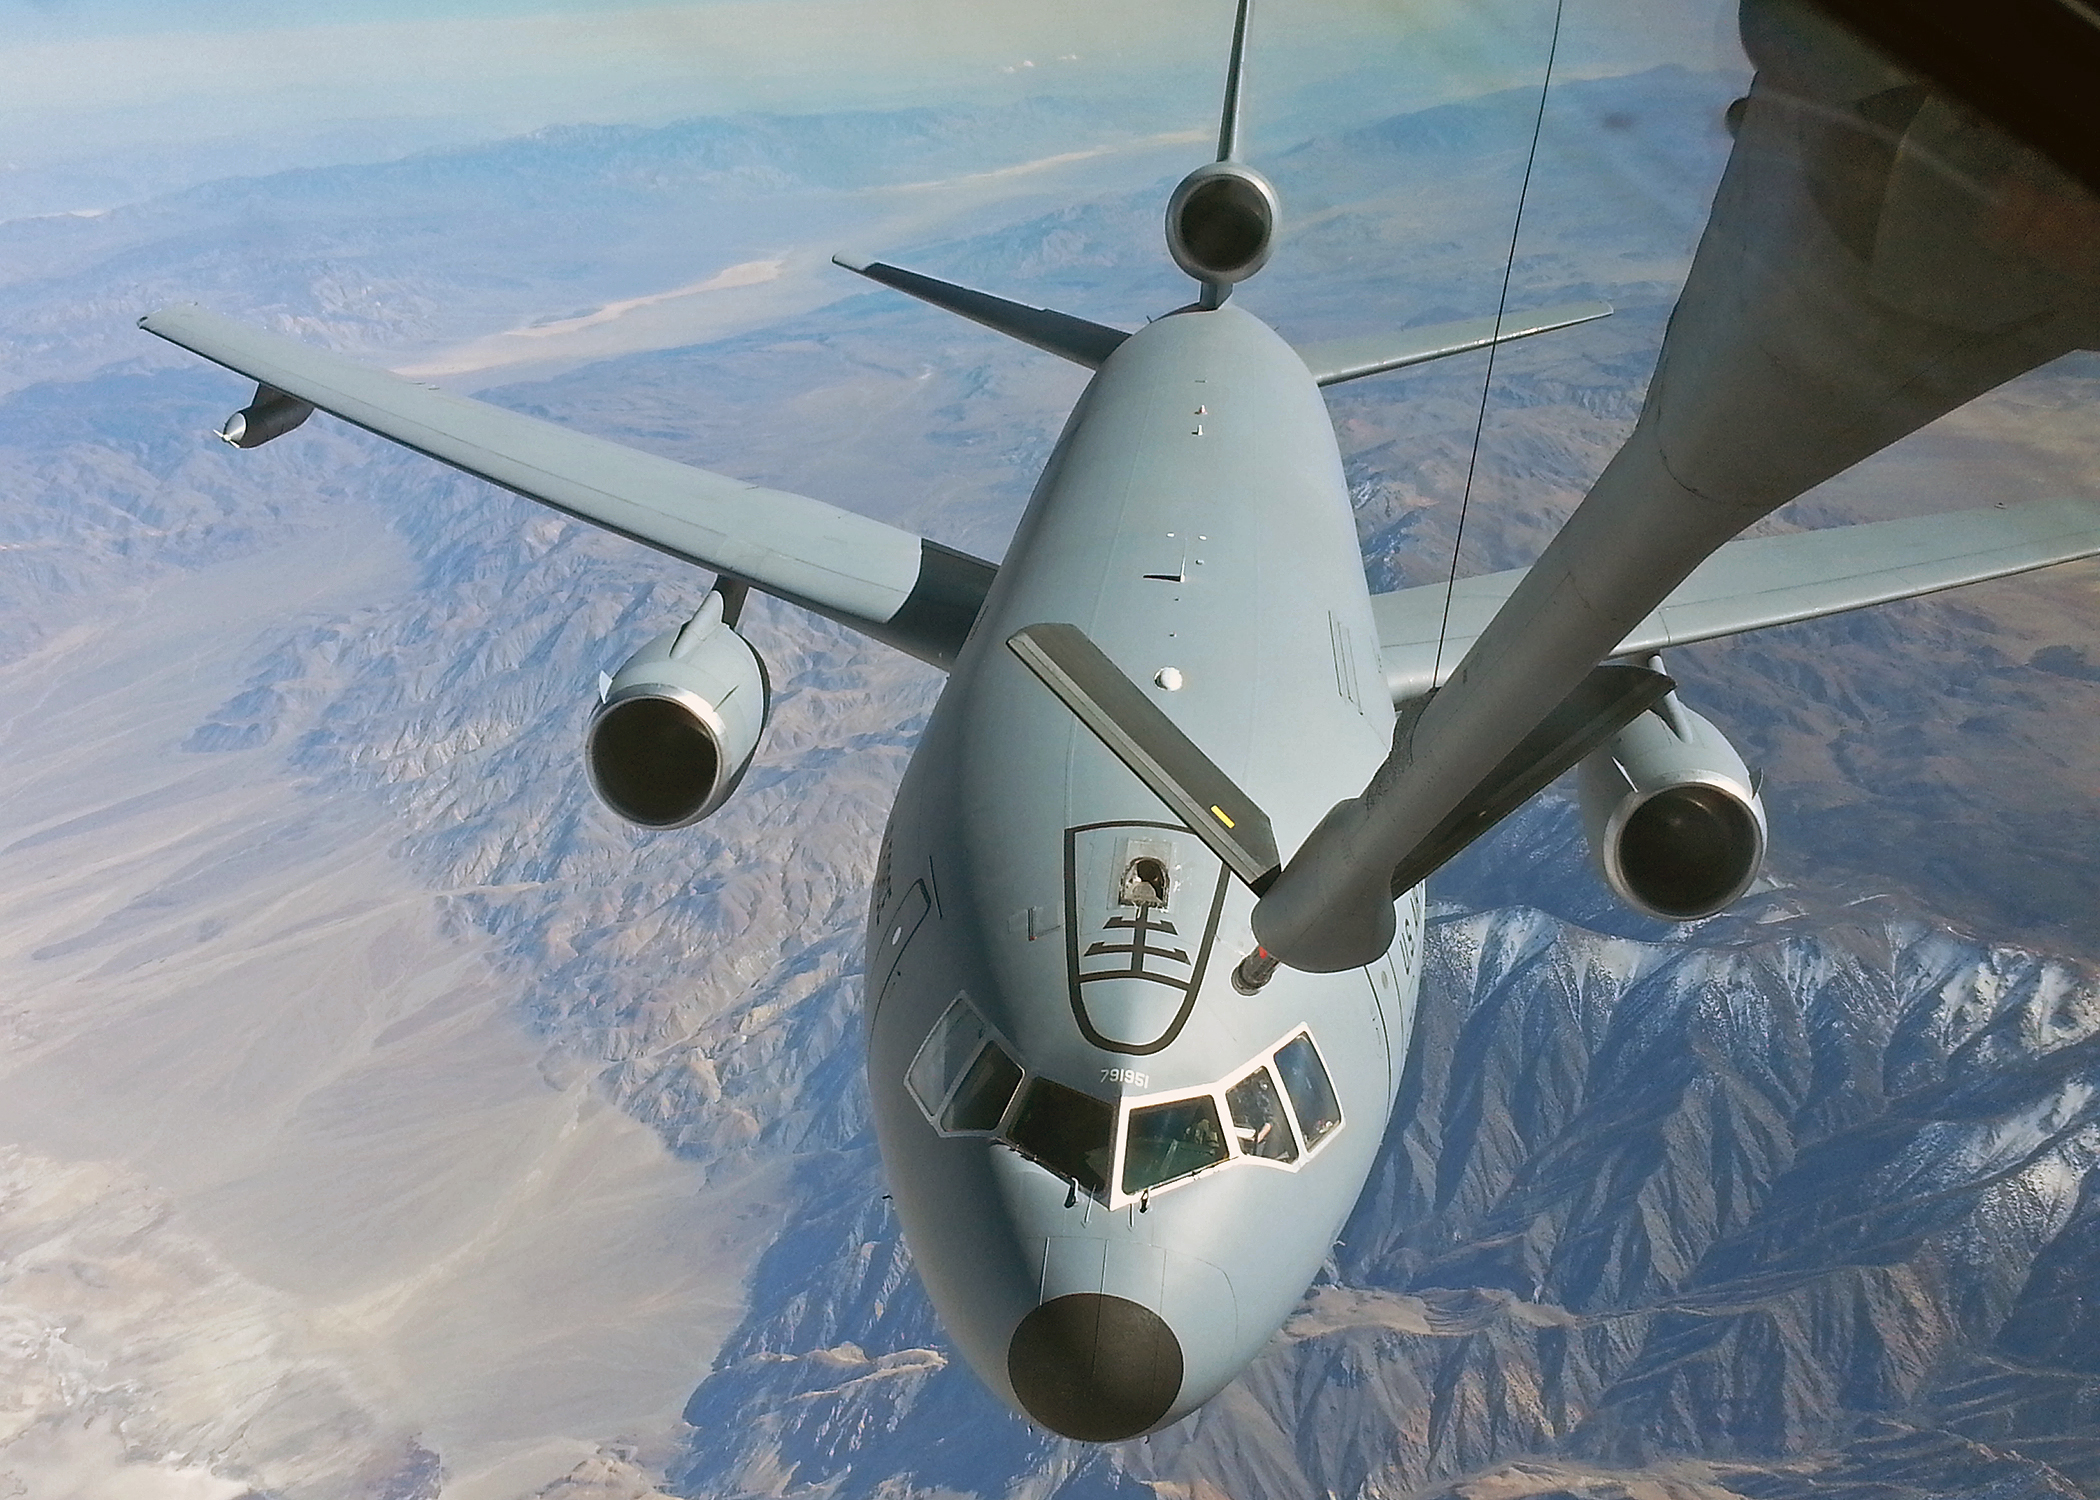 A levegőben történő tankolás rutinművelet a katonai repülésben, azzá válhatna a polgári forgalomban is?